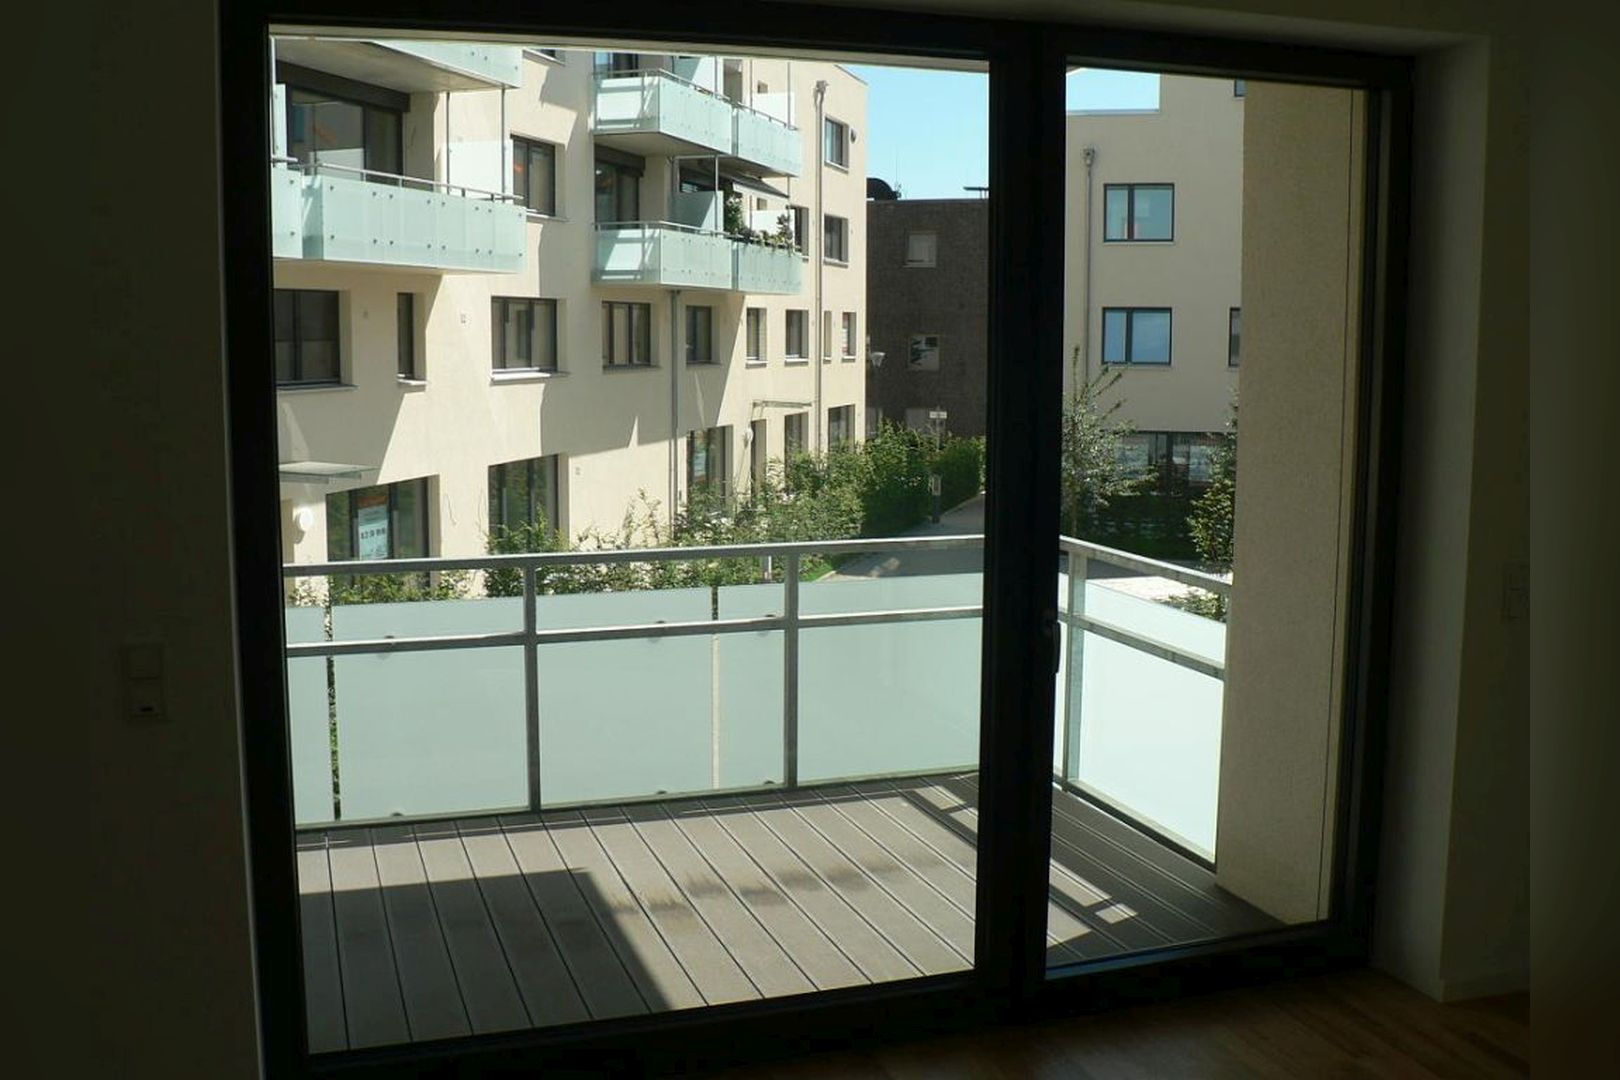 Immobilie Nr.Hilden 021 - 4-Raum-Wohnung mit 2 Balkonen und Aufzug - Bild 12.jpg